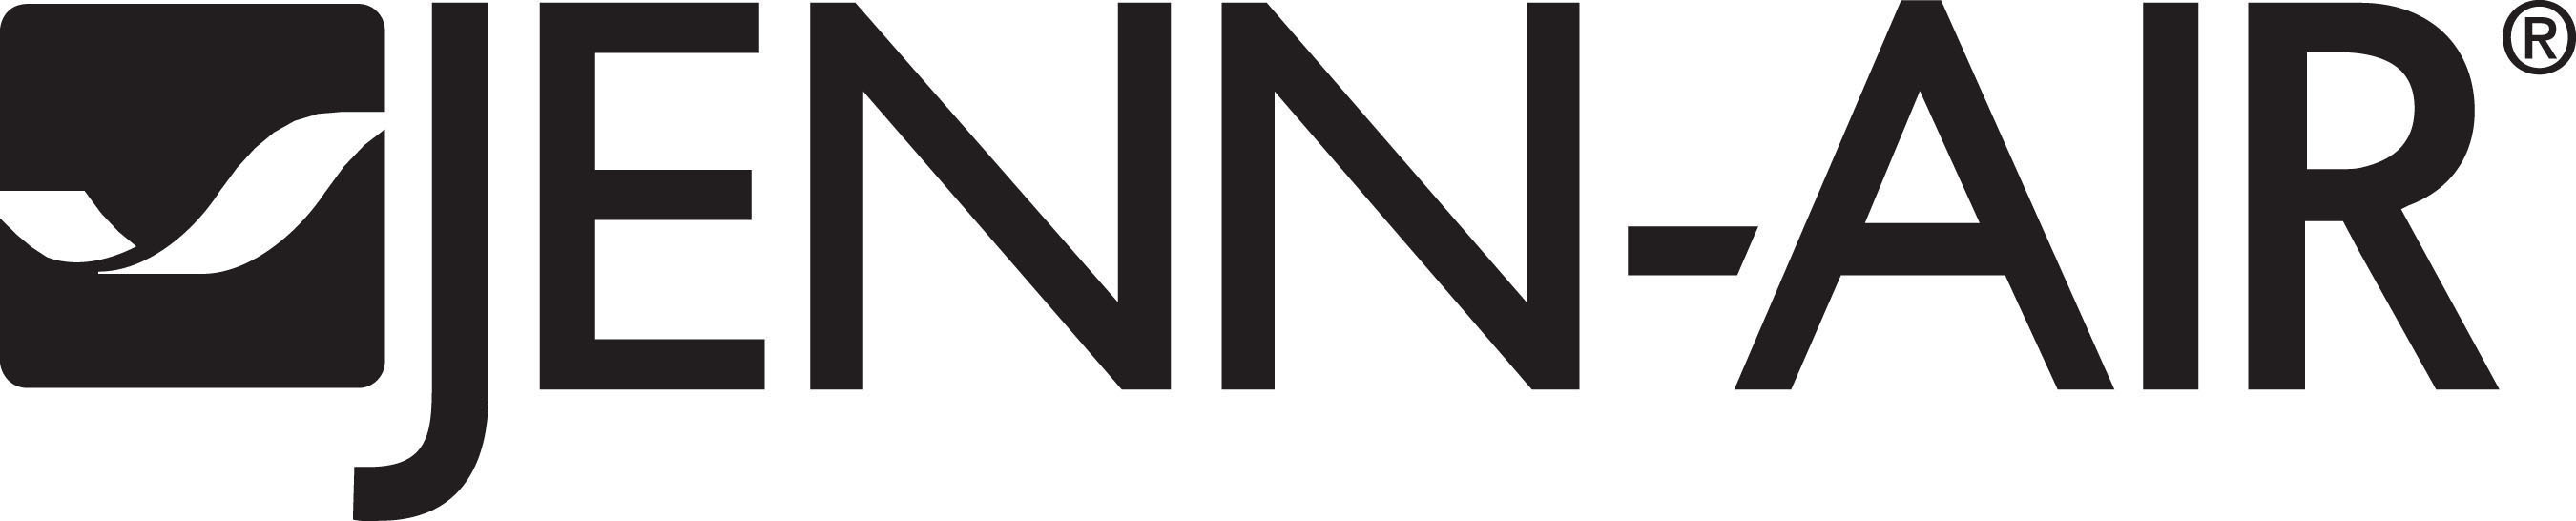 Jenn-Air logo.